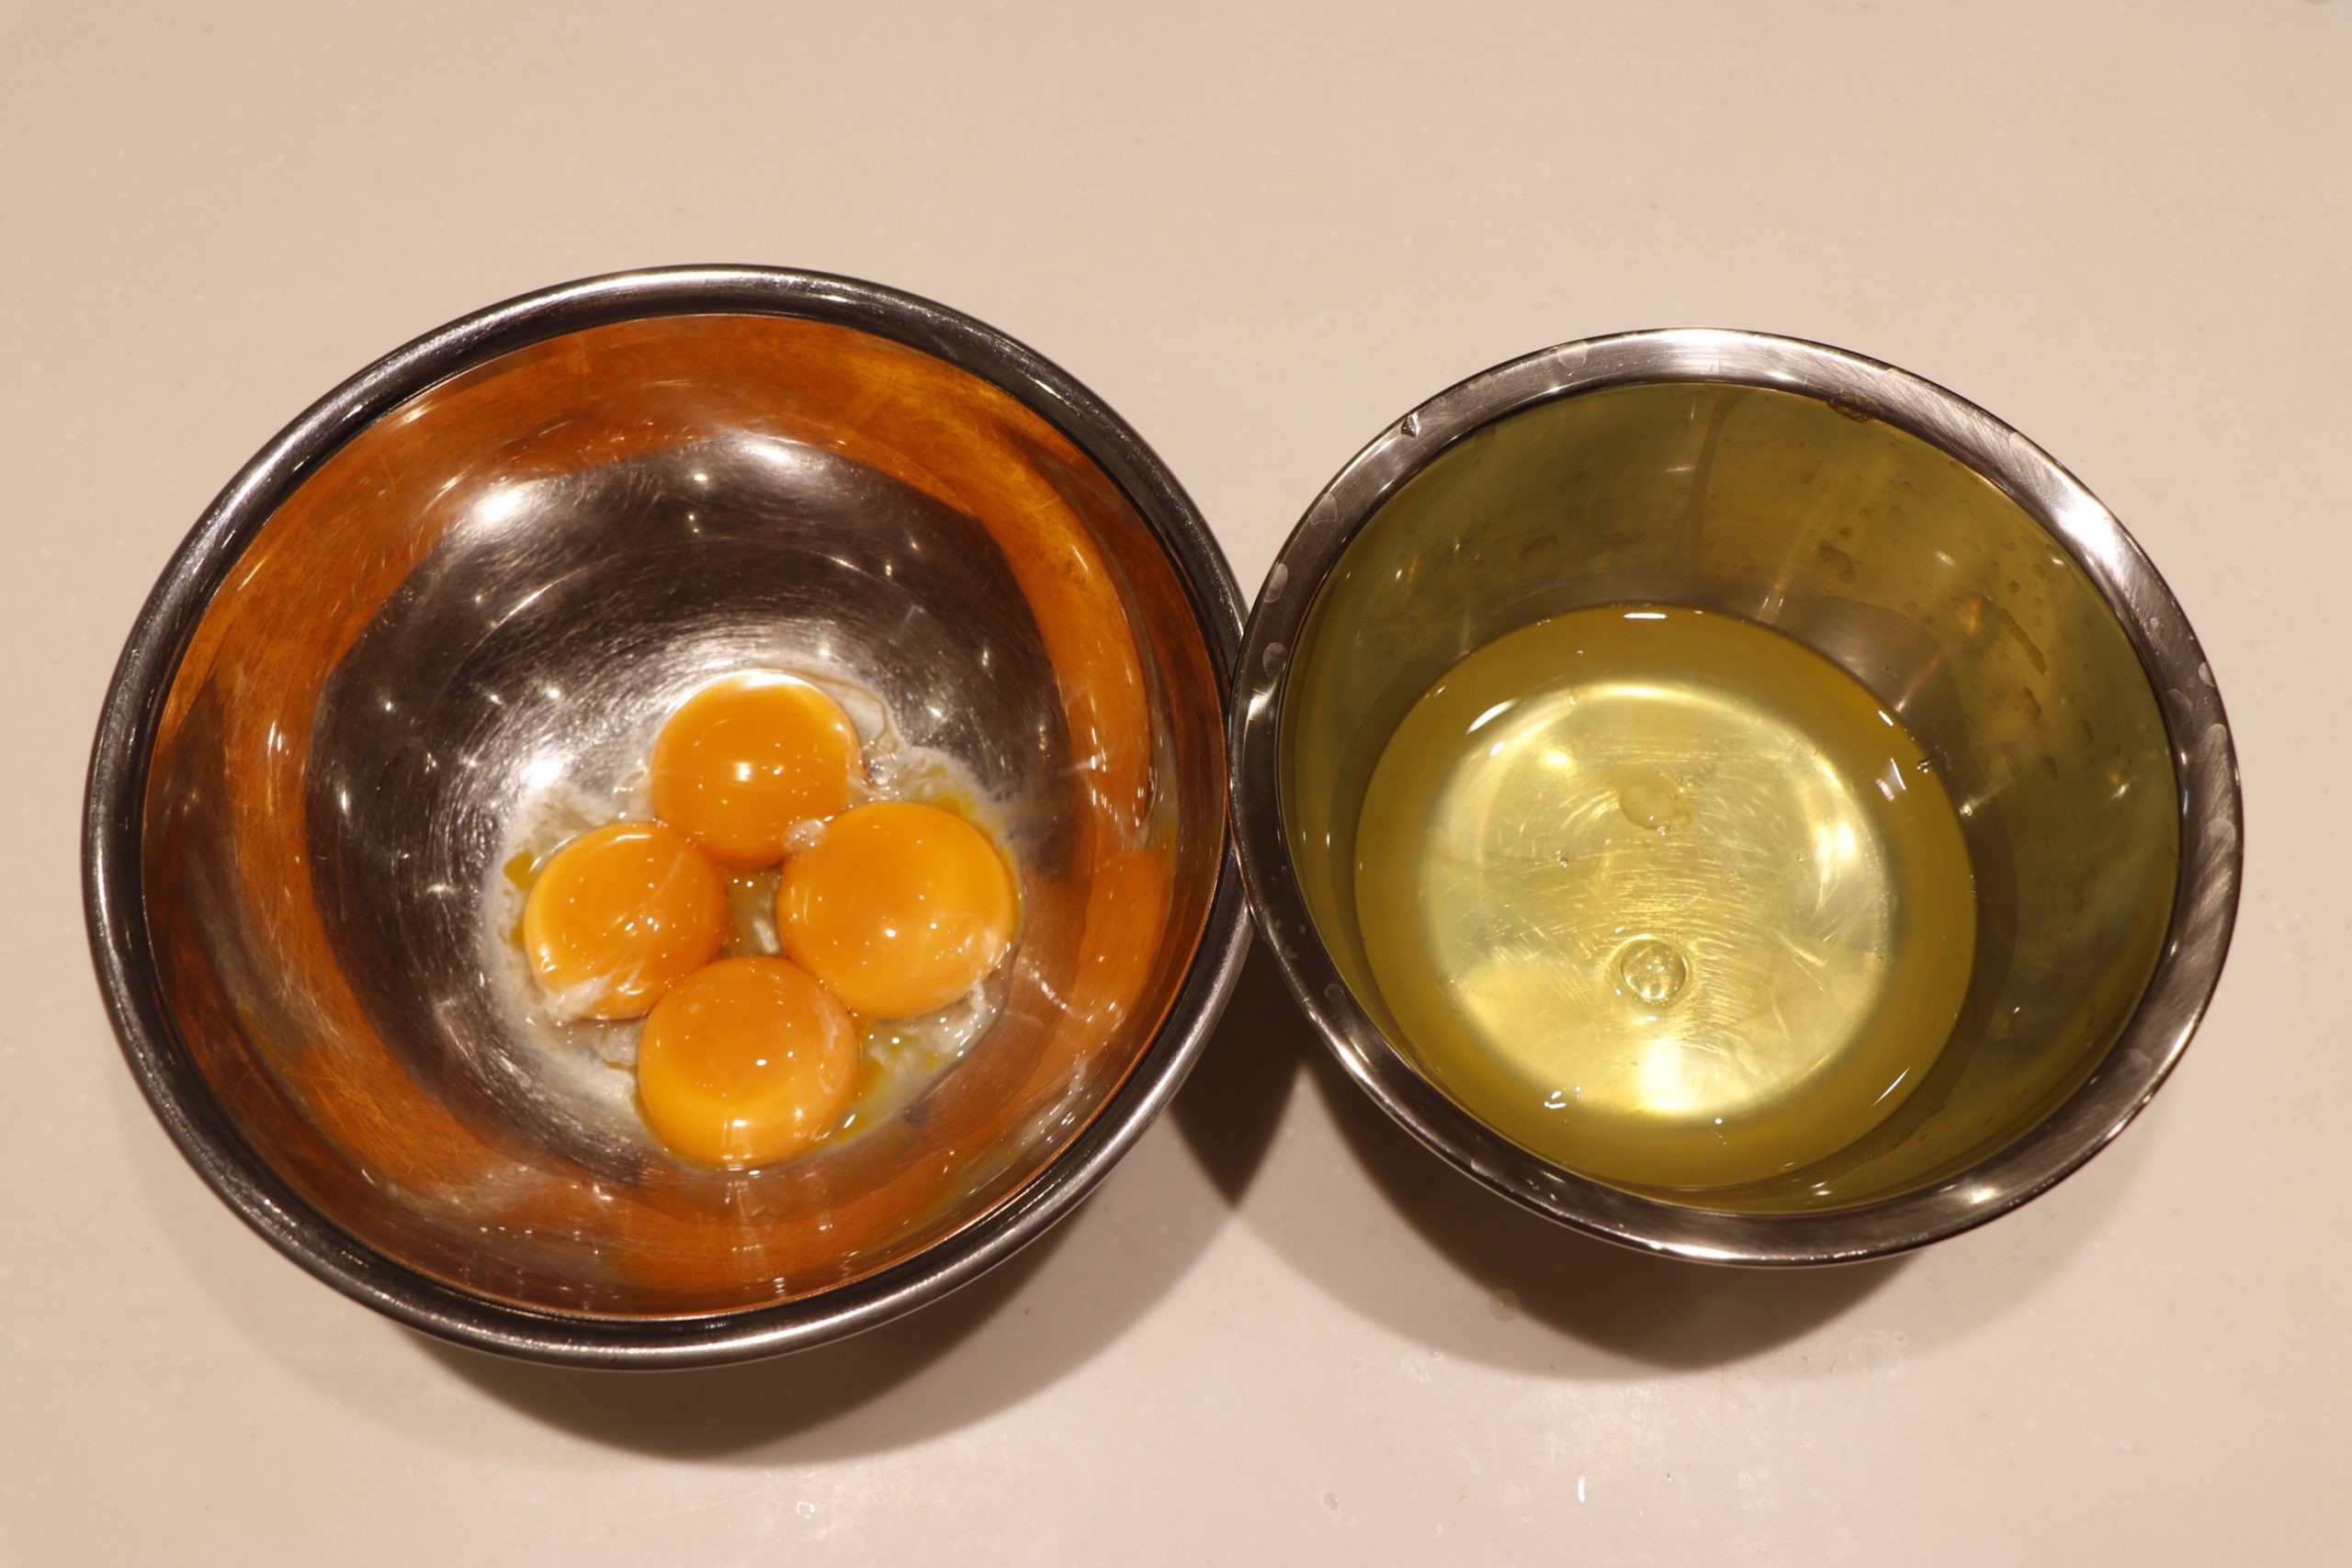 【下準備】
・たまごは、卵黄と卵白に分けておく。
・オーブンは170度に予熱しておく。